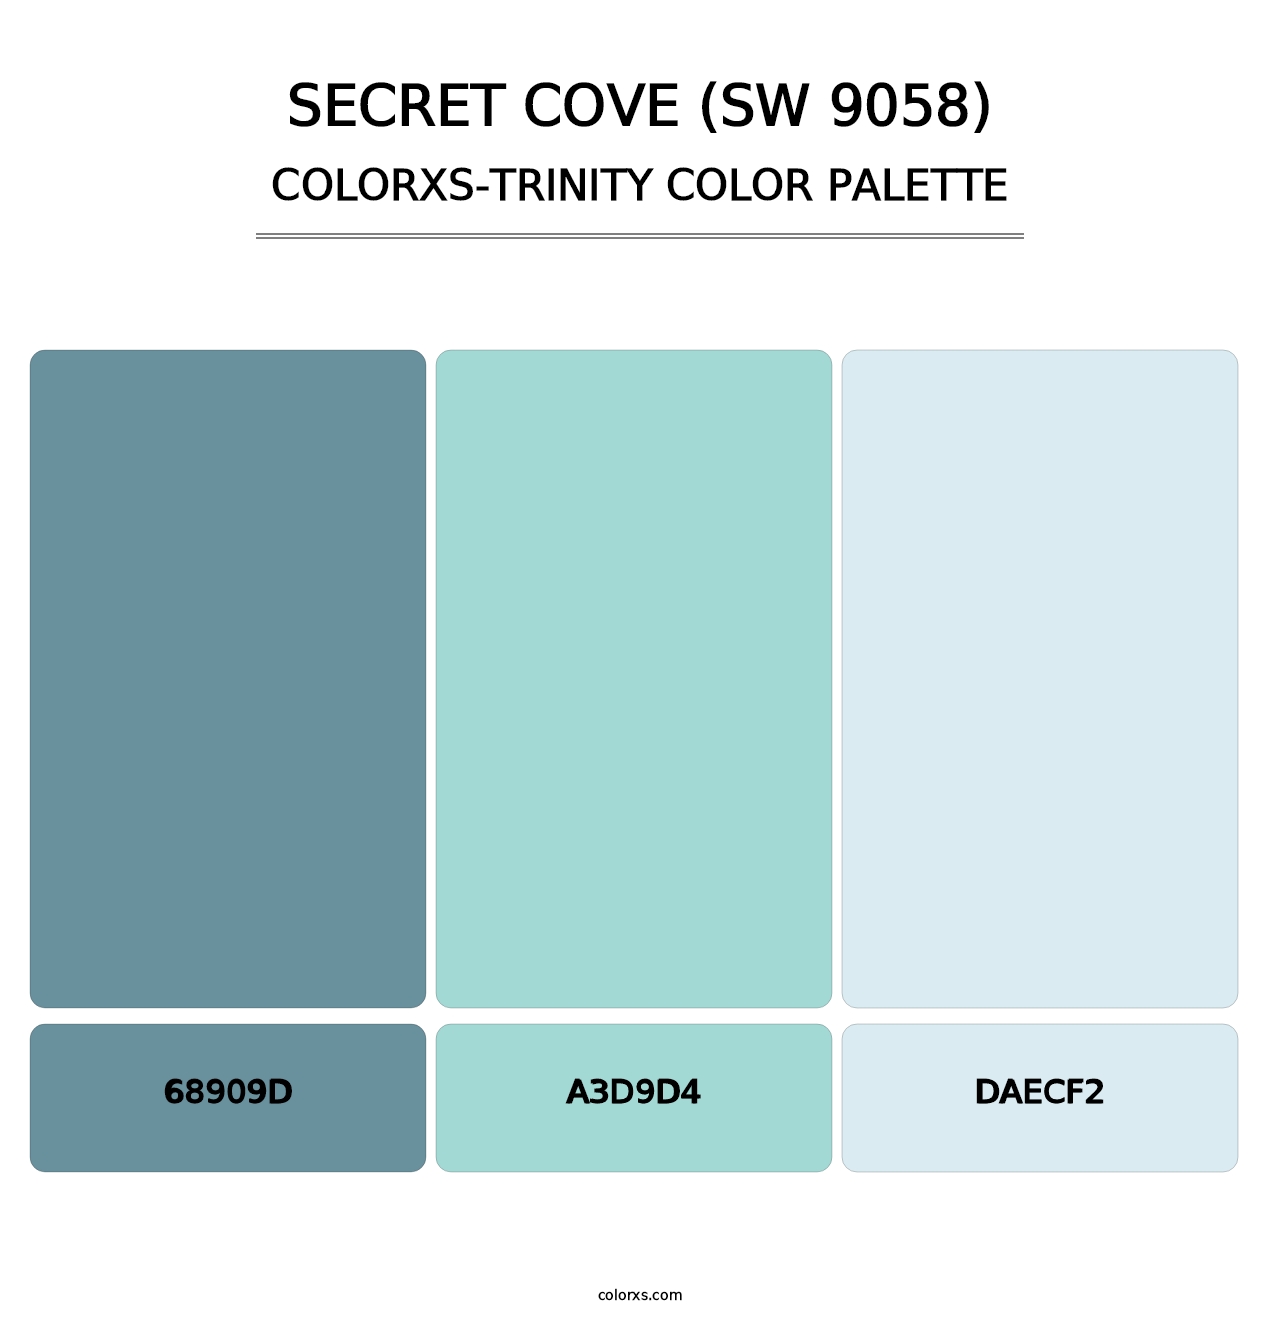 Secret Cove (SW 9058) - Colorxs Trinity Palette